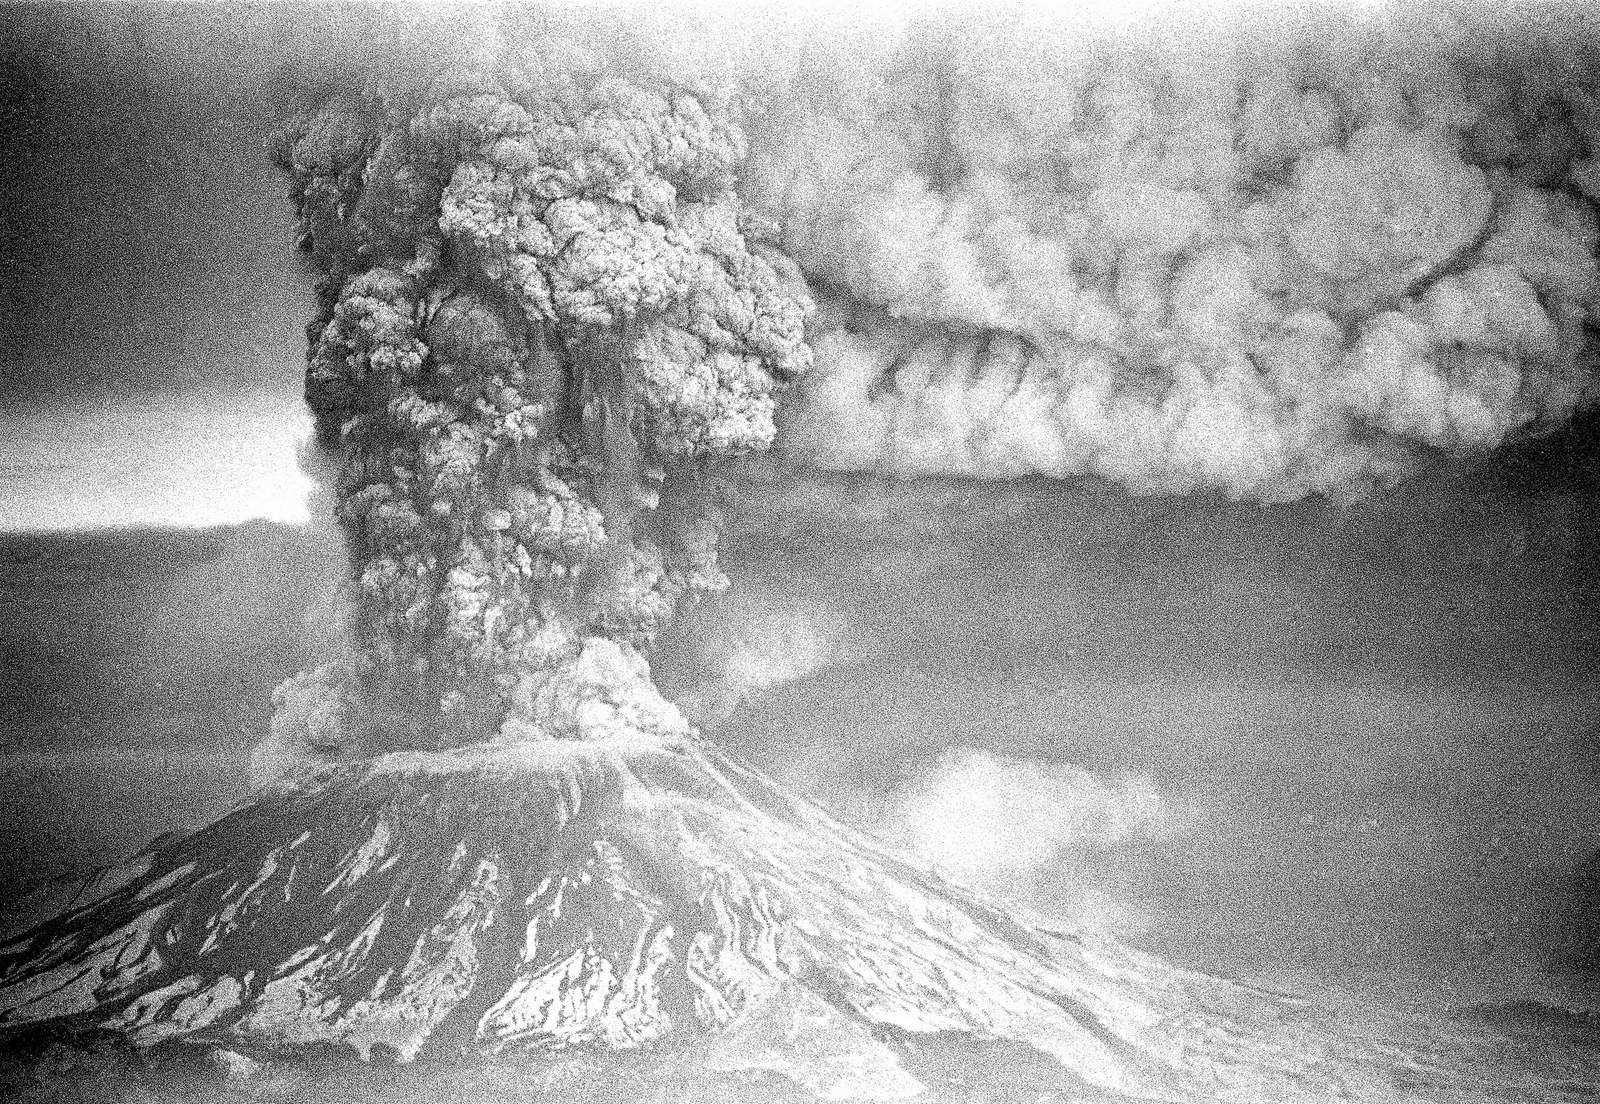 Virus interrupts St. Helens eruption anniversary plans